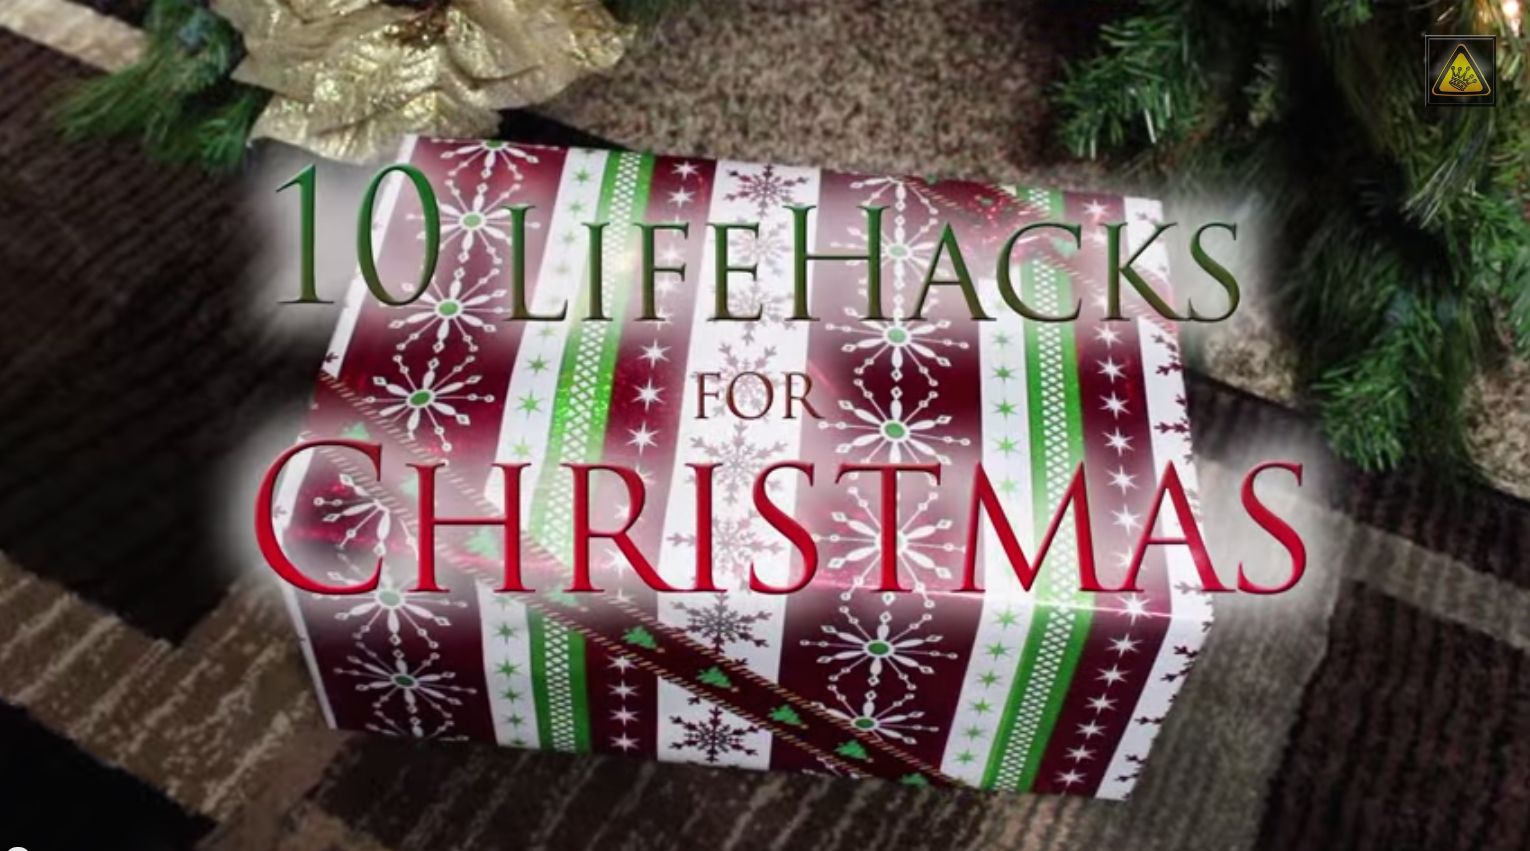 Christmas hacks